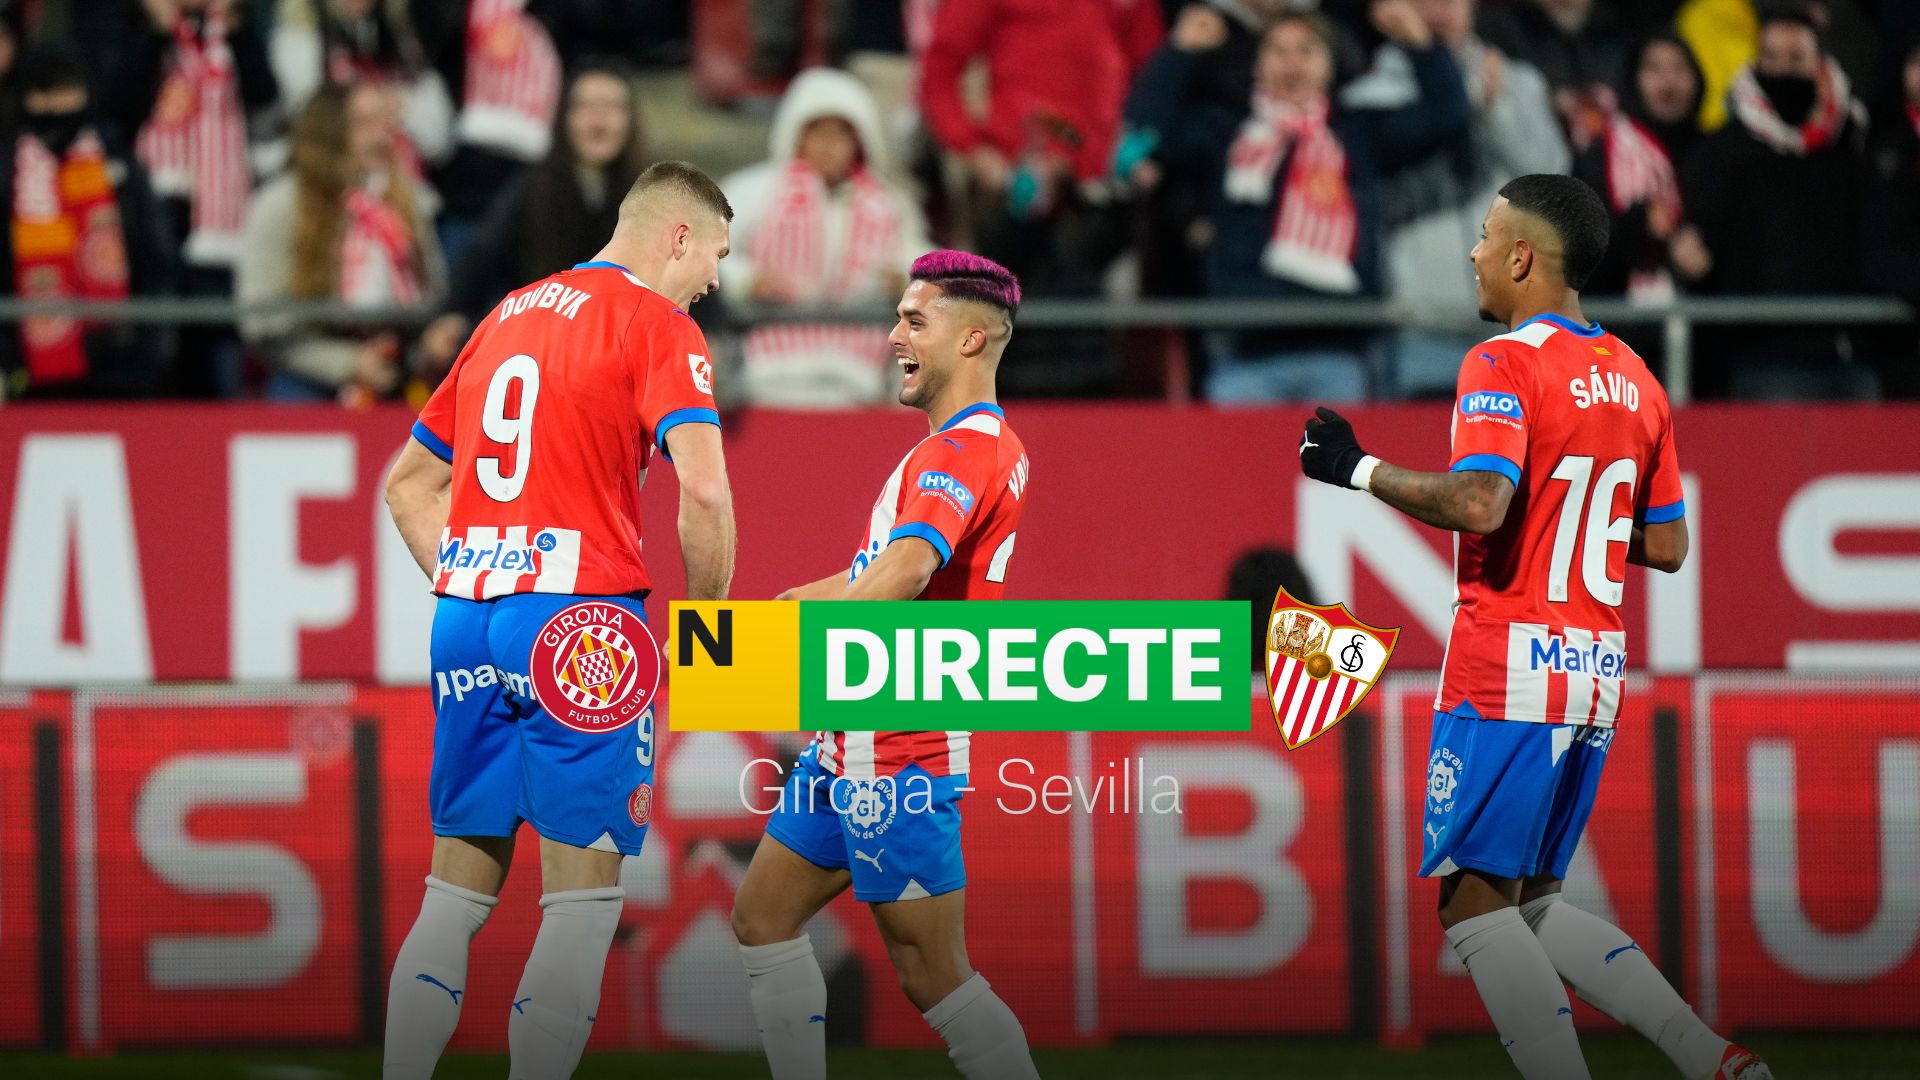 Girona-Sevilla de LaLiga EA Sports, DIRECTE |Resultat, resum i gols